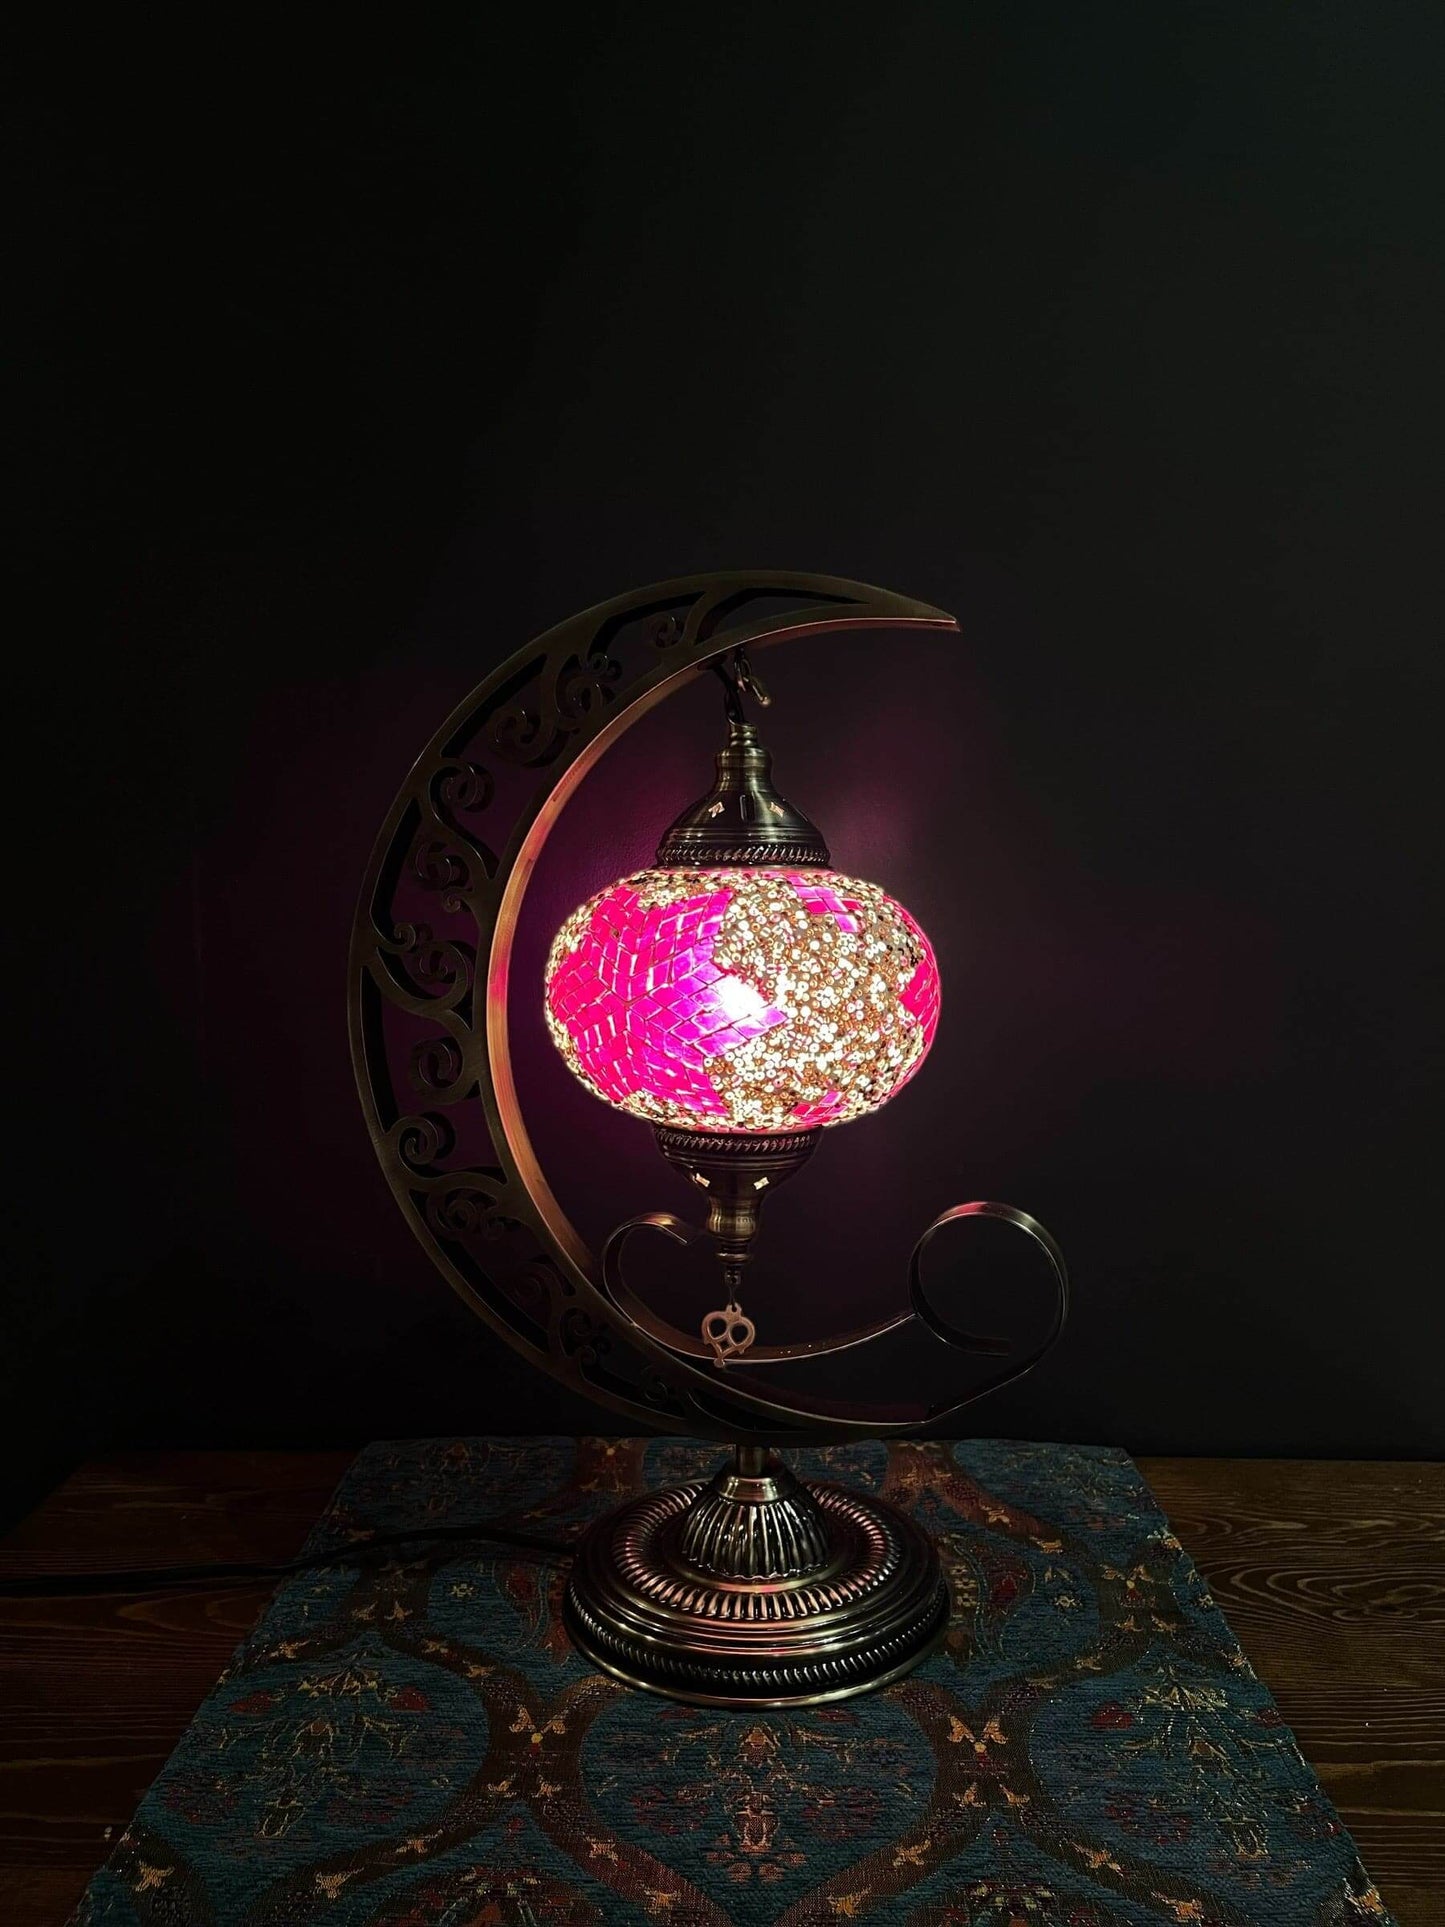 Mosaic Moon Lamp (Turkish Lamps) Purple-Pink$175.00Bazaar G Rugs N Gifts